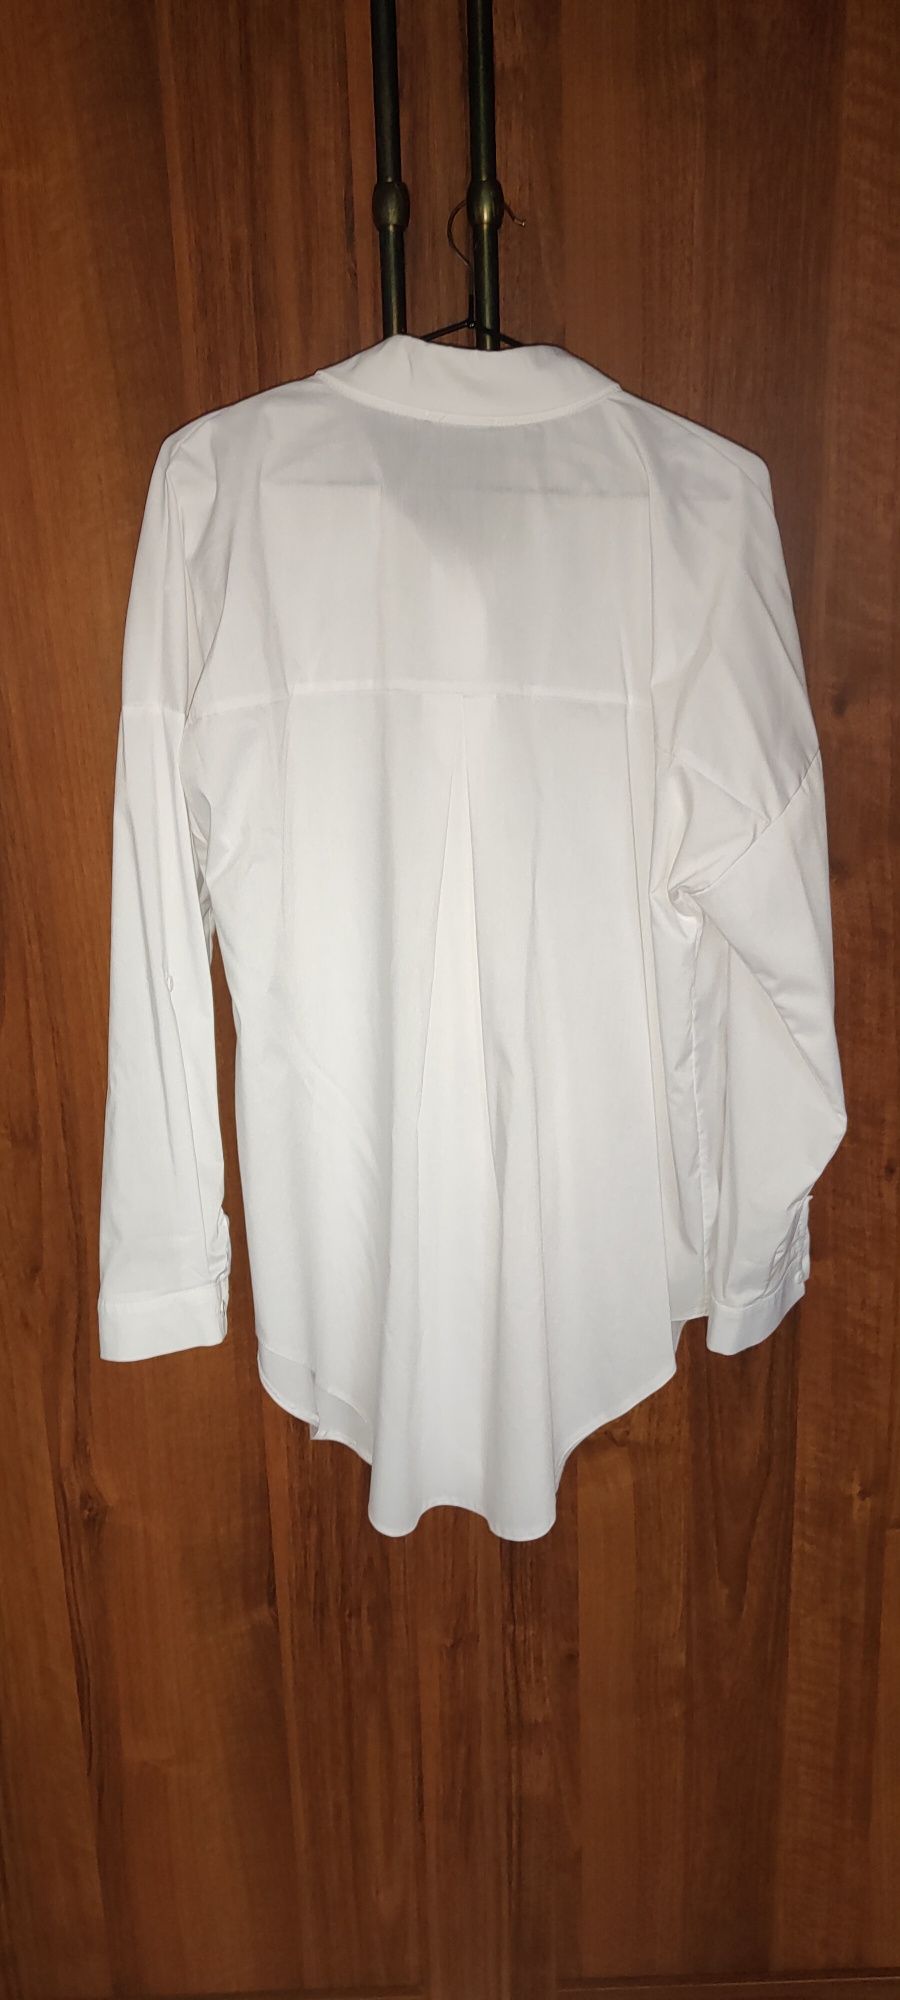 Biała  bluzka koszulowa oversaizowa koszula l/xl